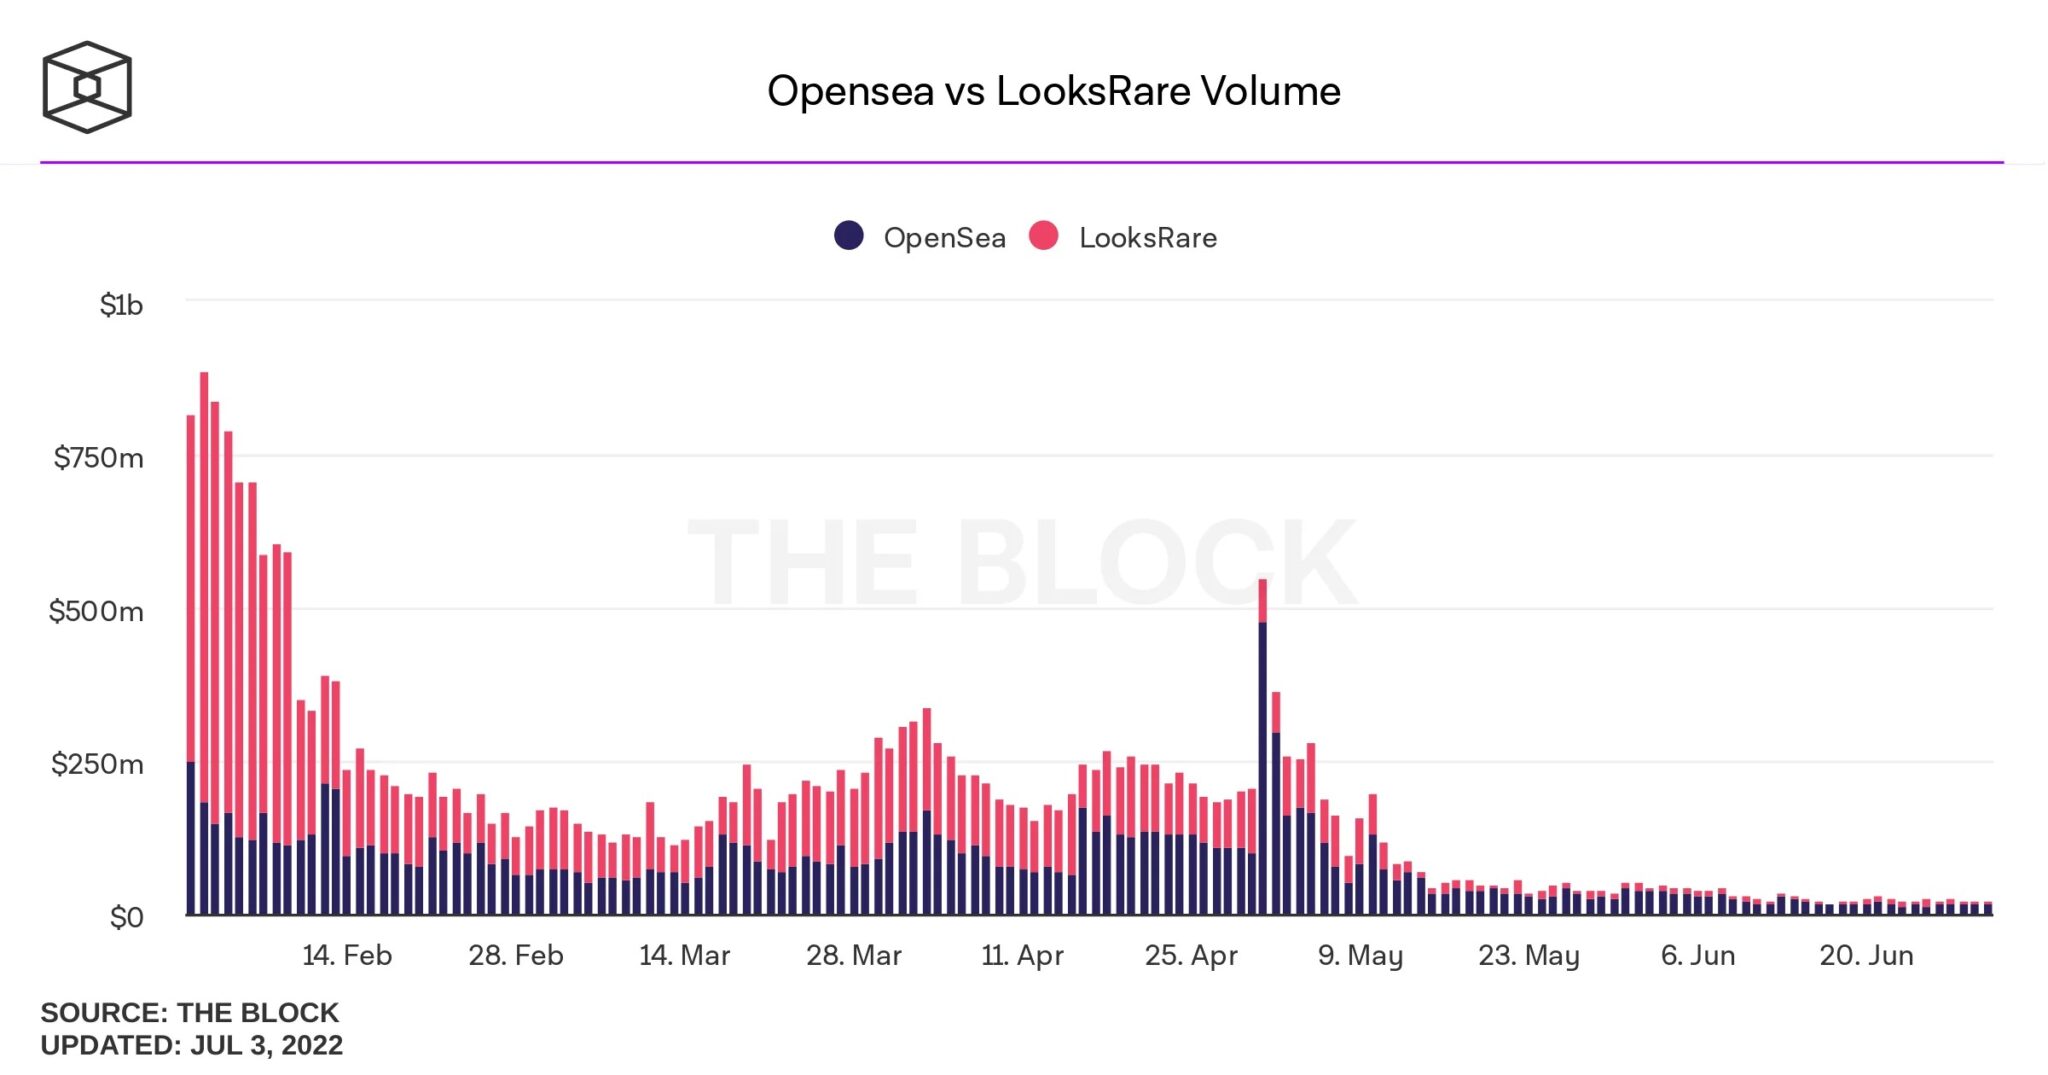 Obrázek 2: Srovnání objemů mezi OpenSea a LooksRare